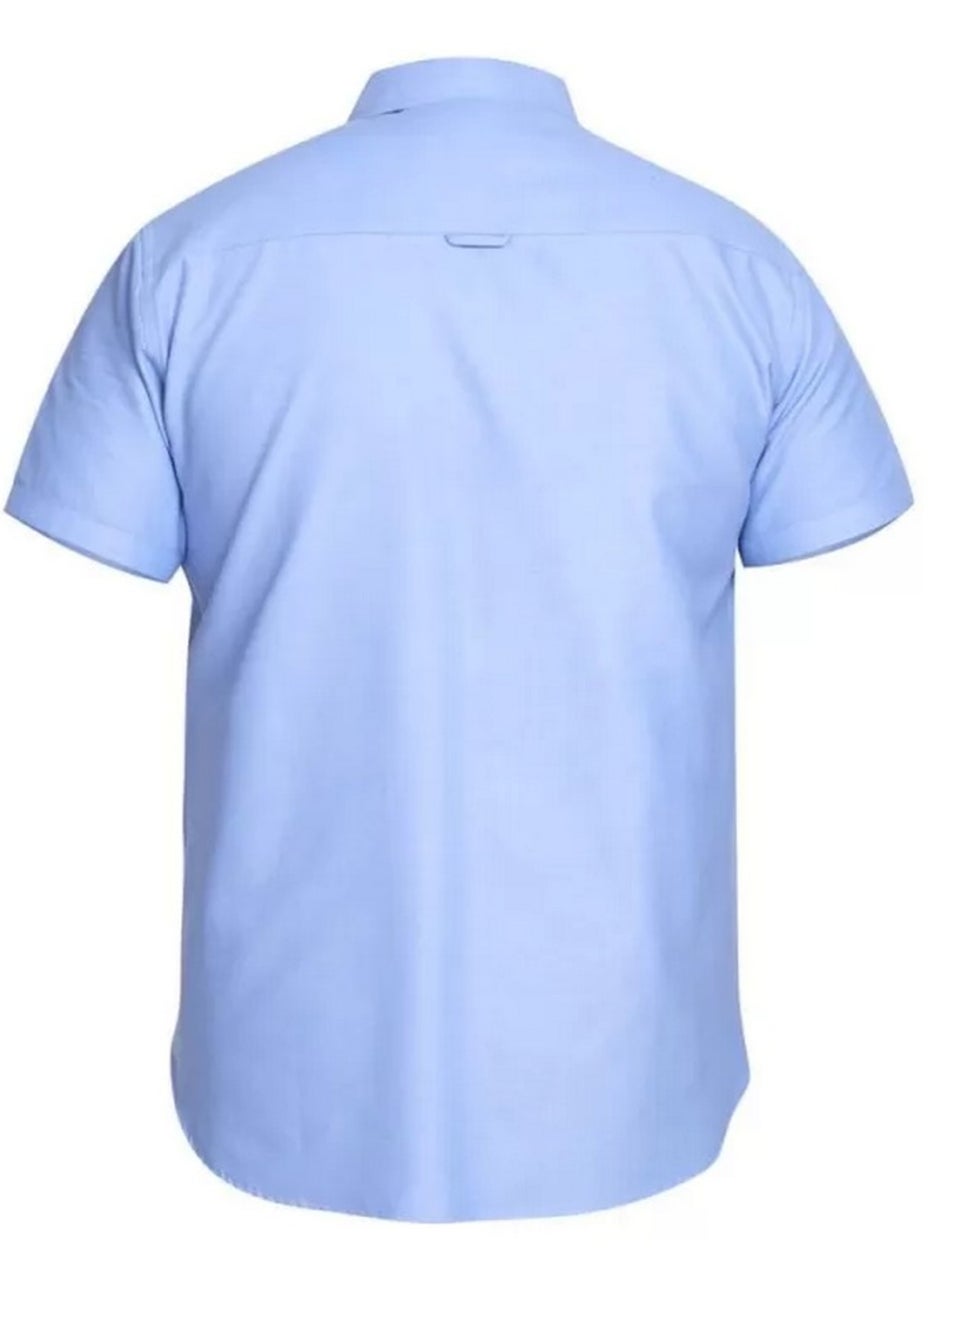 Duke Sky Blue James Oxford Kingsize Short-Sleeved Shirt